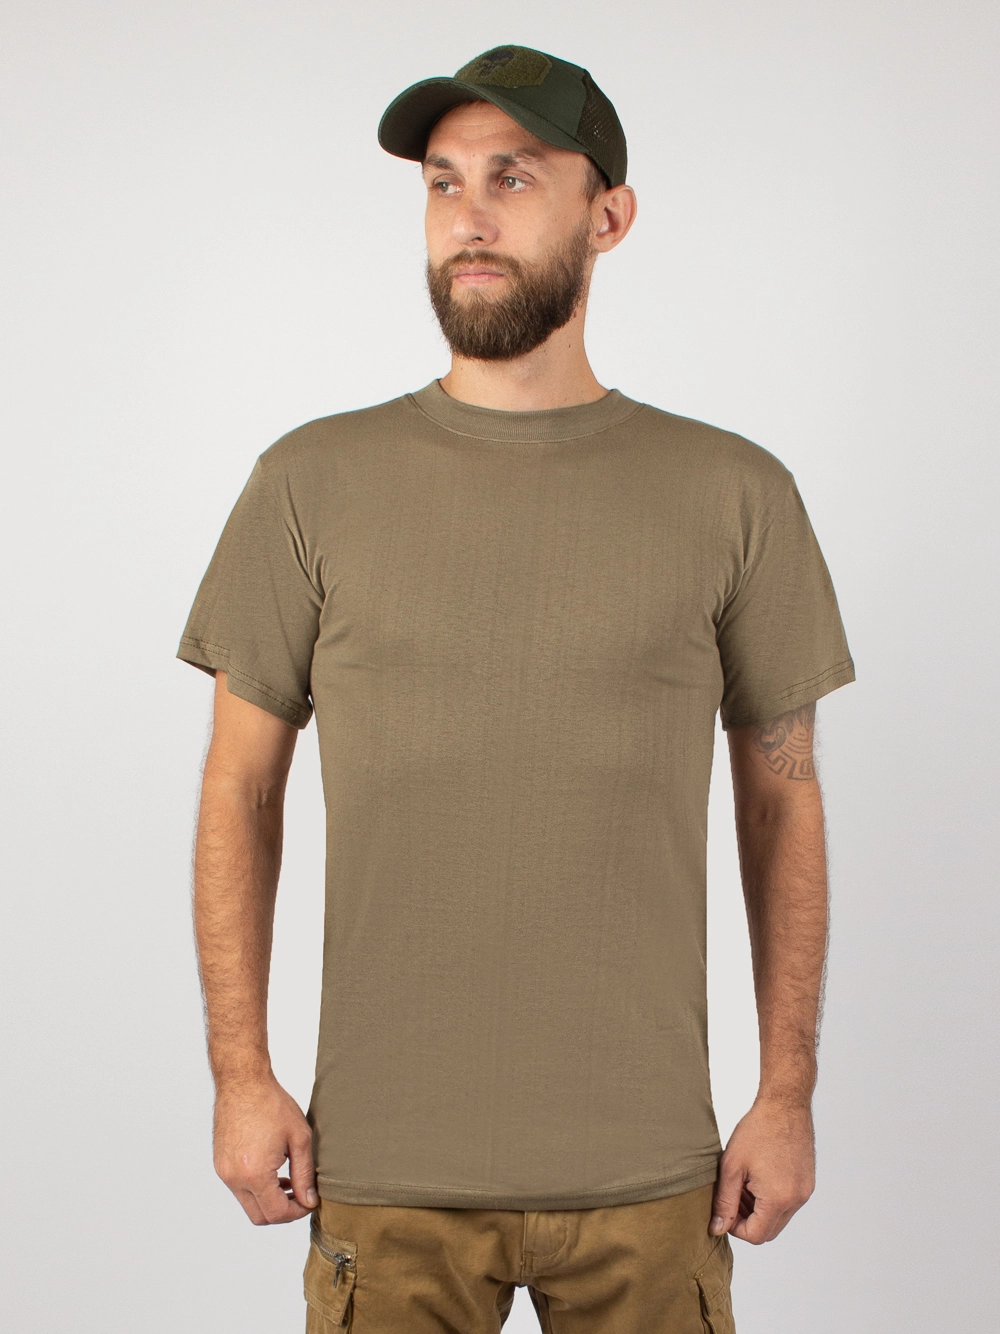 Мужская футболка нового образца без надписи цвет хаки олива купить винтернет-магазине www.kamukamu.ru